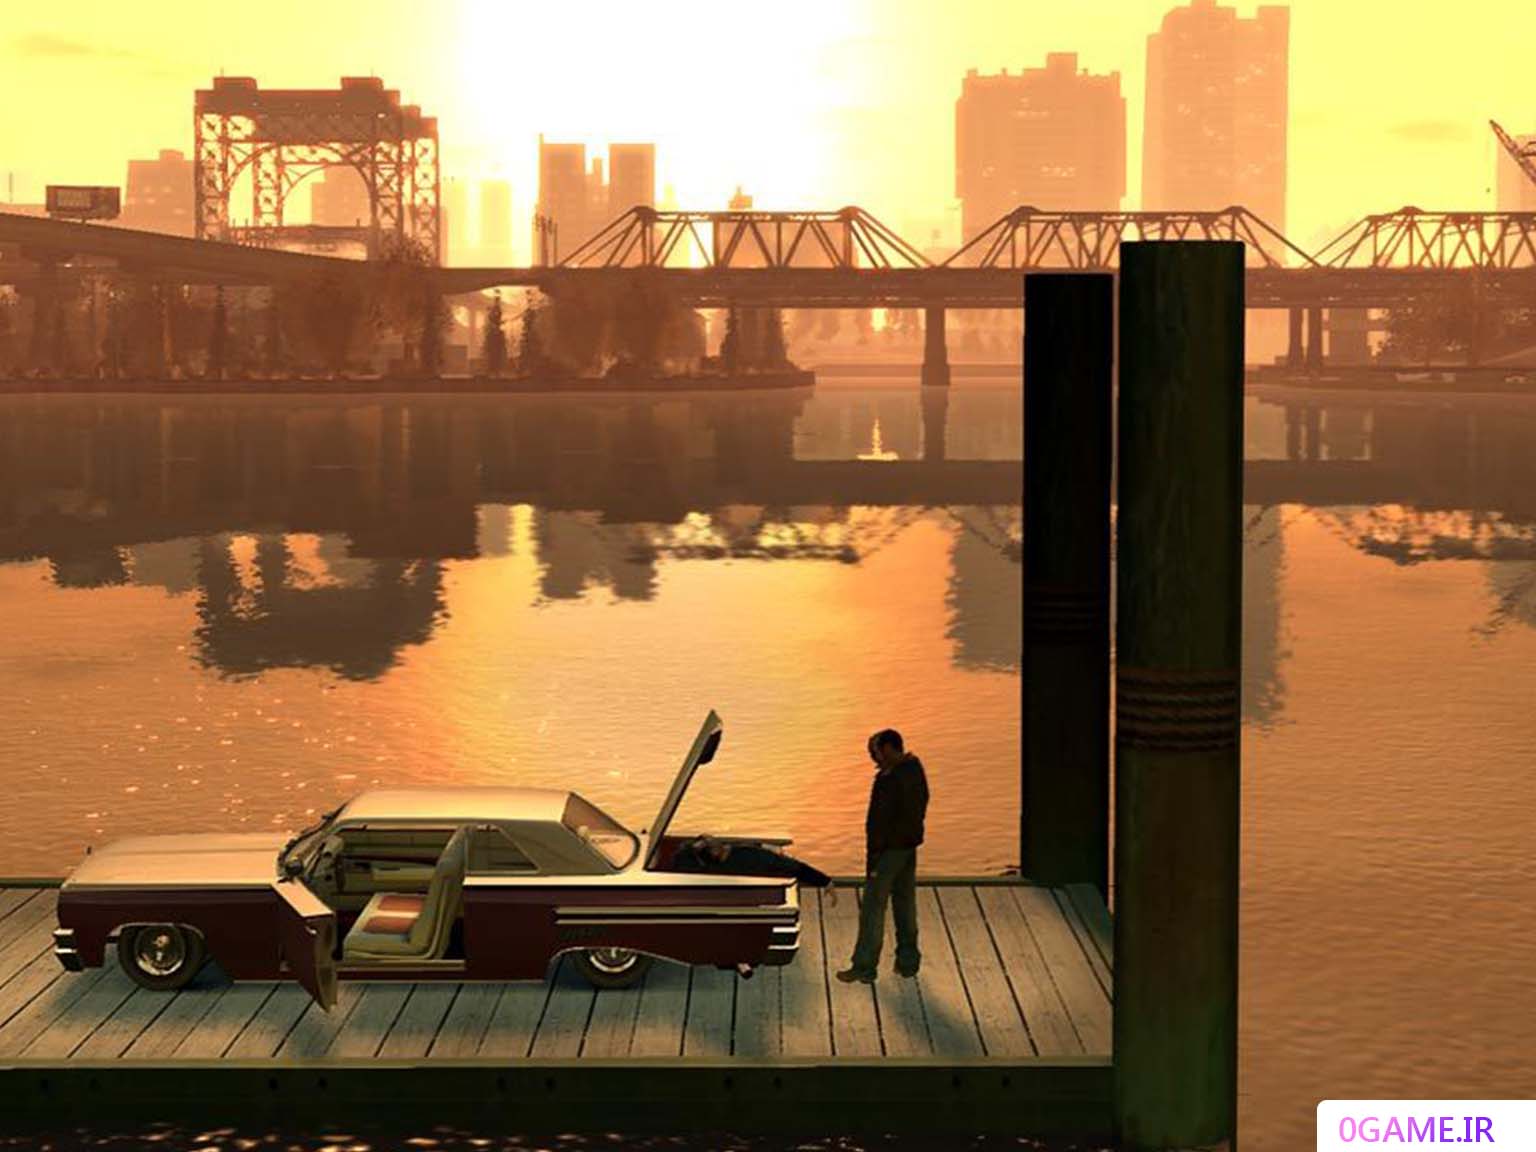 دانلود بازی جی تی ای ای وی (Grand Theft Auto IV) نسخه کامل برای کامپیوتر